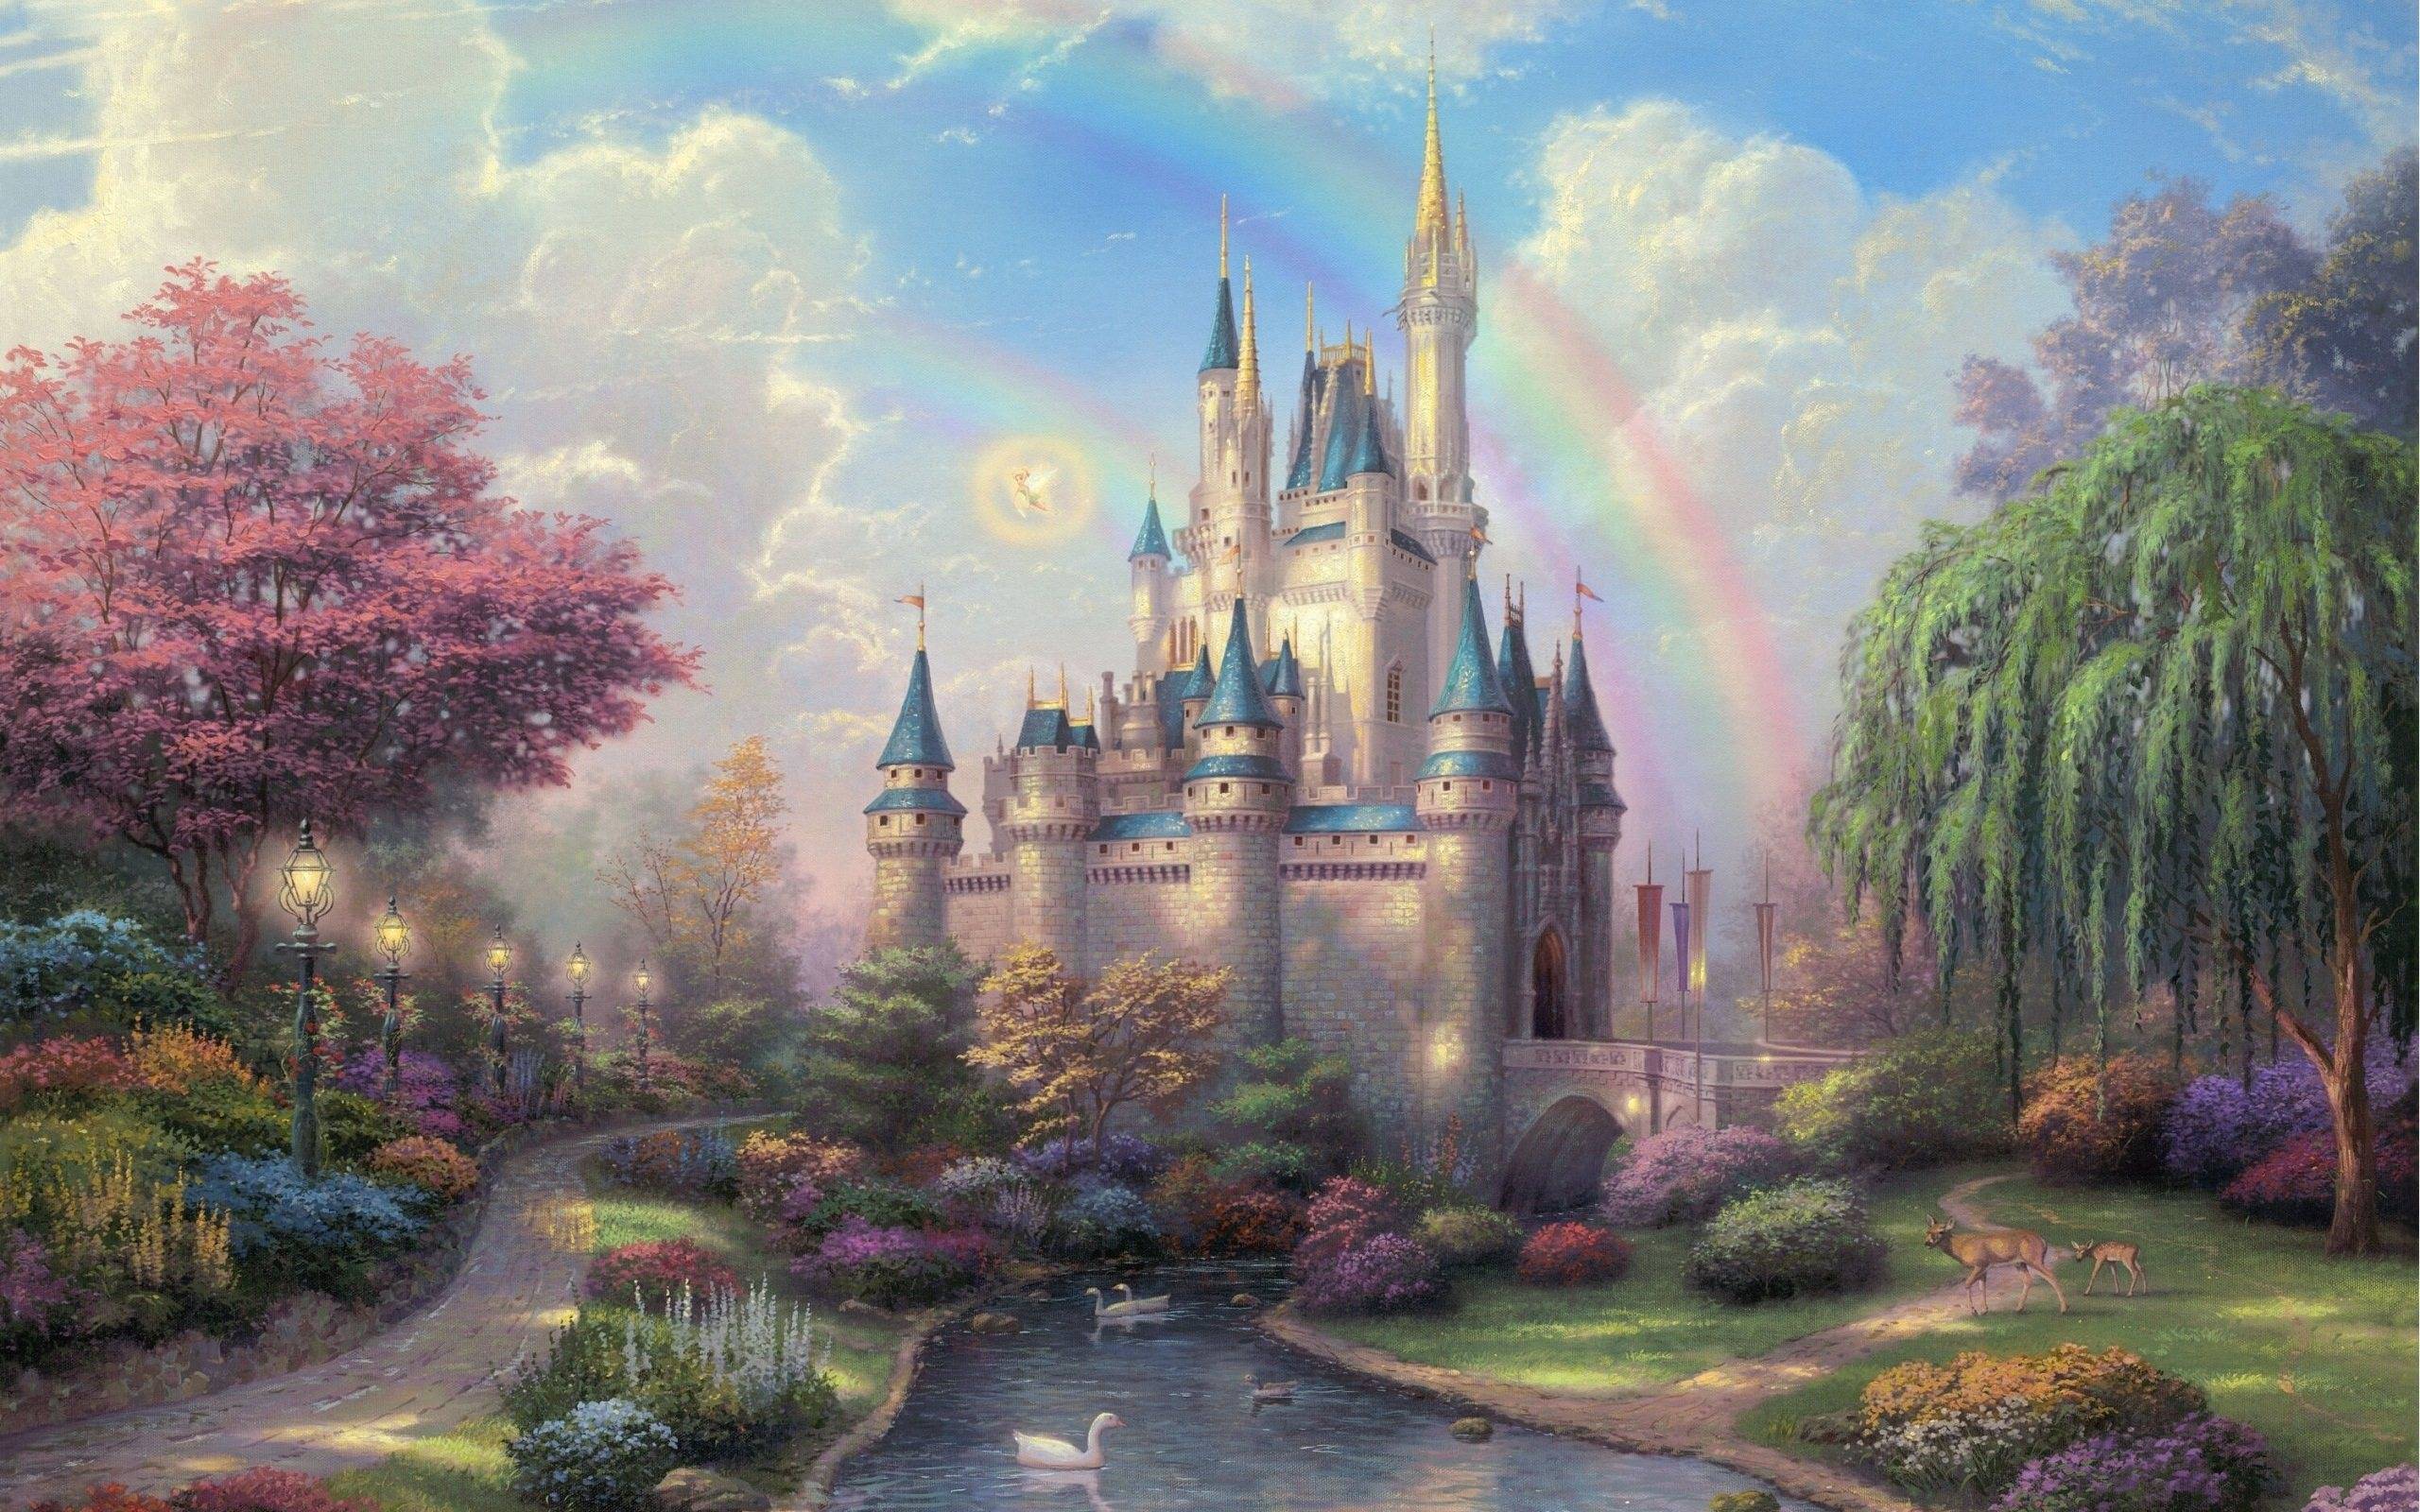 Disney castle wallpaper by DisneyClarke  Download on ZEDGE  54a9